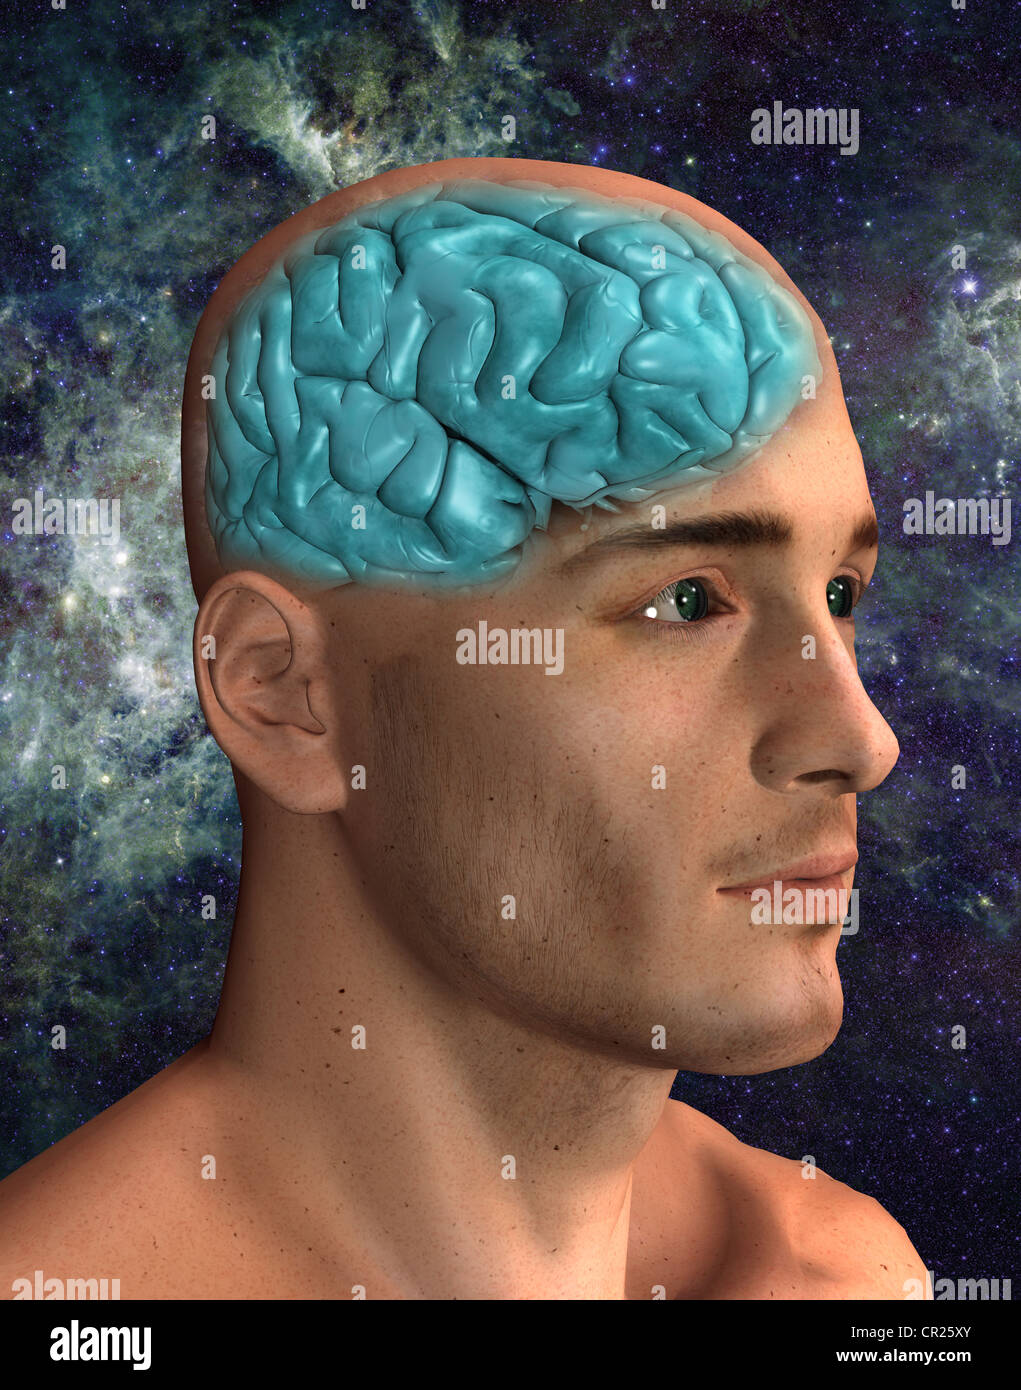 Illustration d'un cerveau humain à l'intérieur de la tête d'un homme Banque D'Images